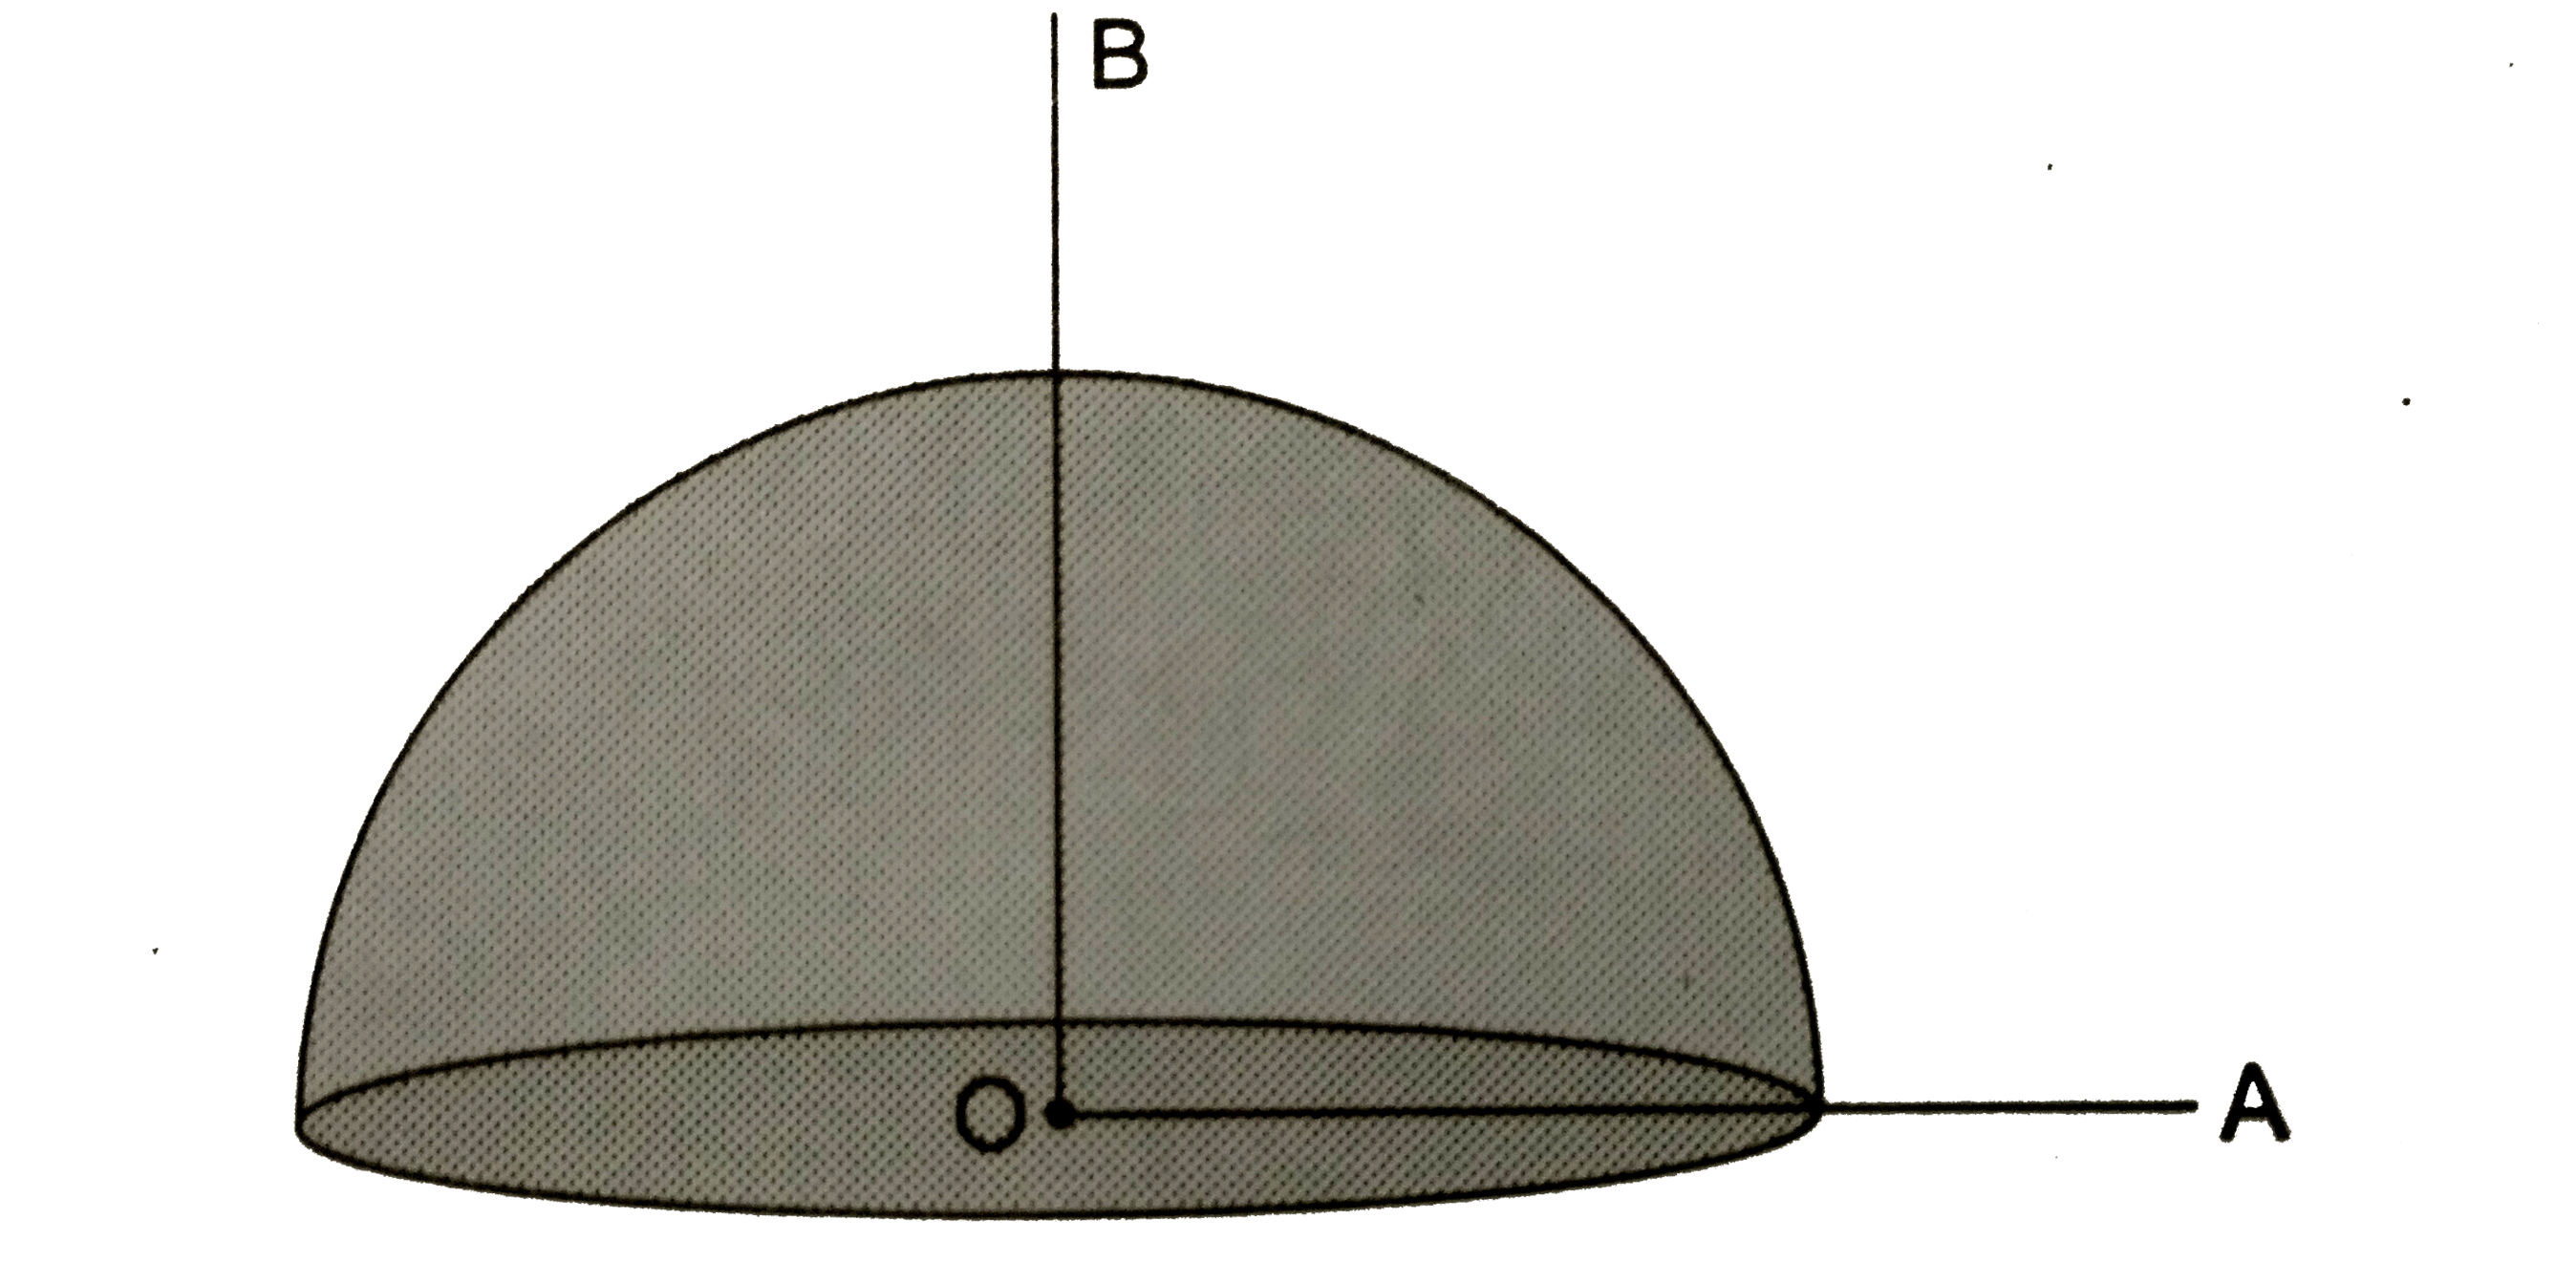 द्रव्यमान M तथा त्रिज्या R की एक अर्धगोलाकार ठोस वस्तु का घनत्व  सभी जगह बराबर है|  गोले के केंद्र O से वस्तु की समतल सतह के समानांतर तथा लंबवत रेखाएँ OA तथा OB खींची गई हैं । प्रत्येक के प्रति वस्तु का जड़त्व आघूर्ण निकालें ।